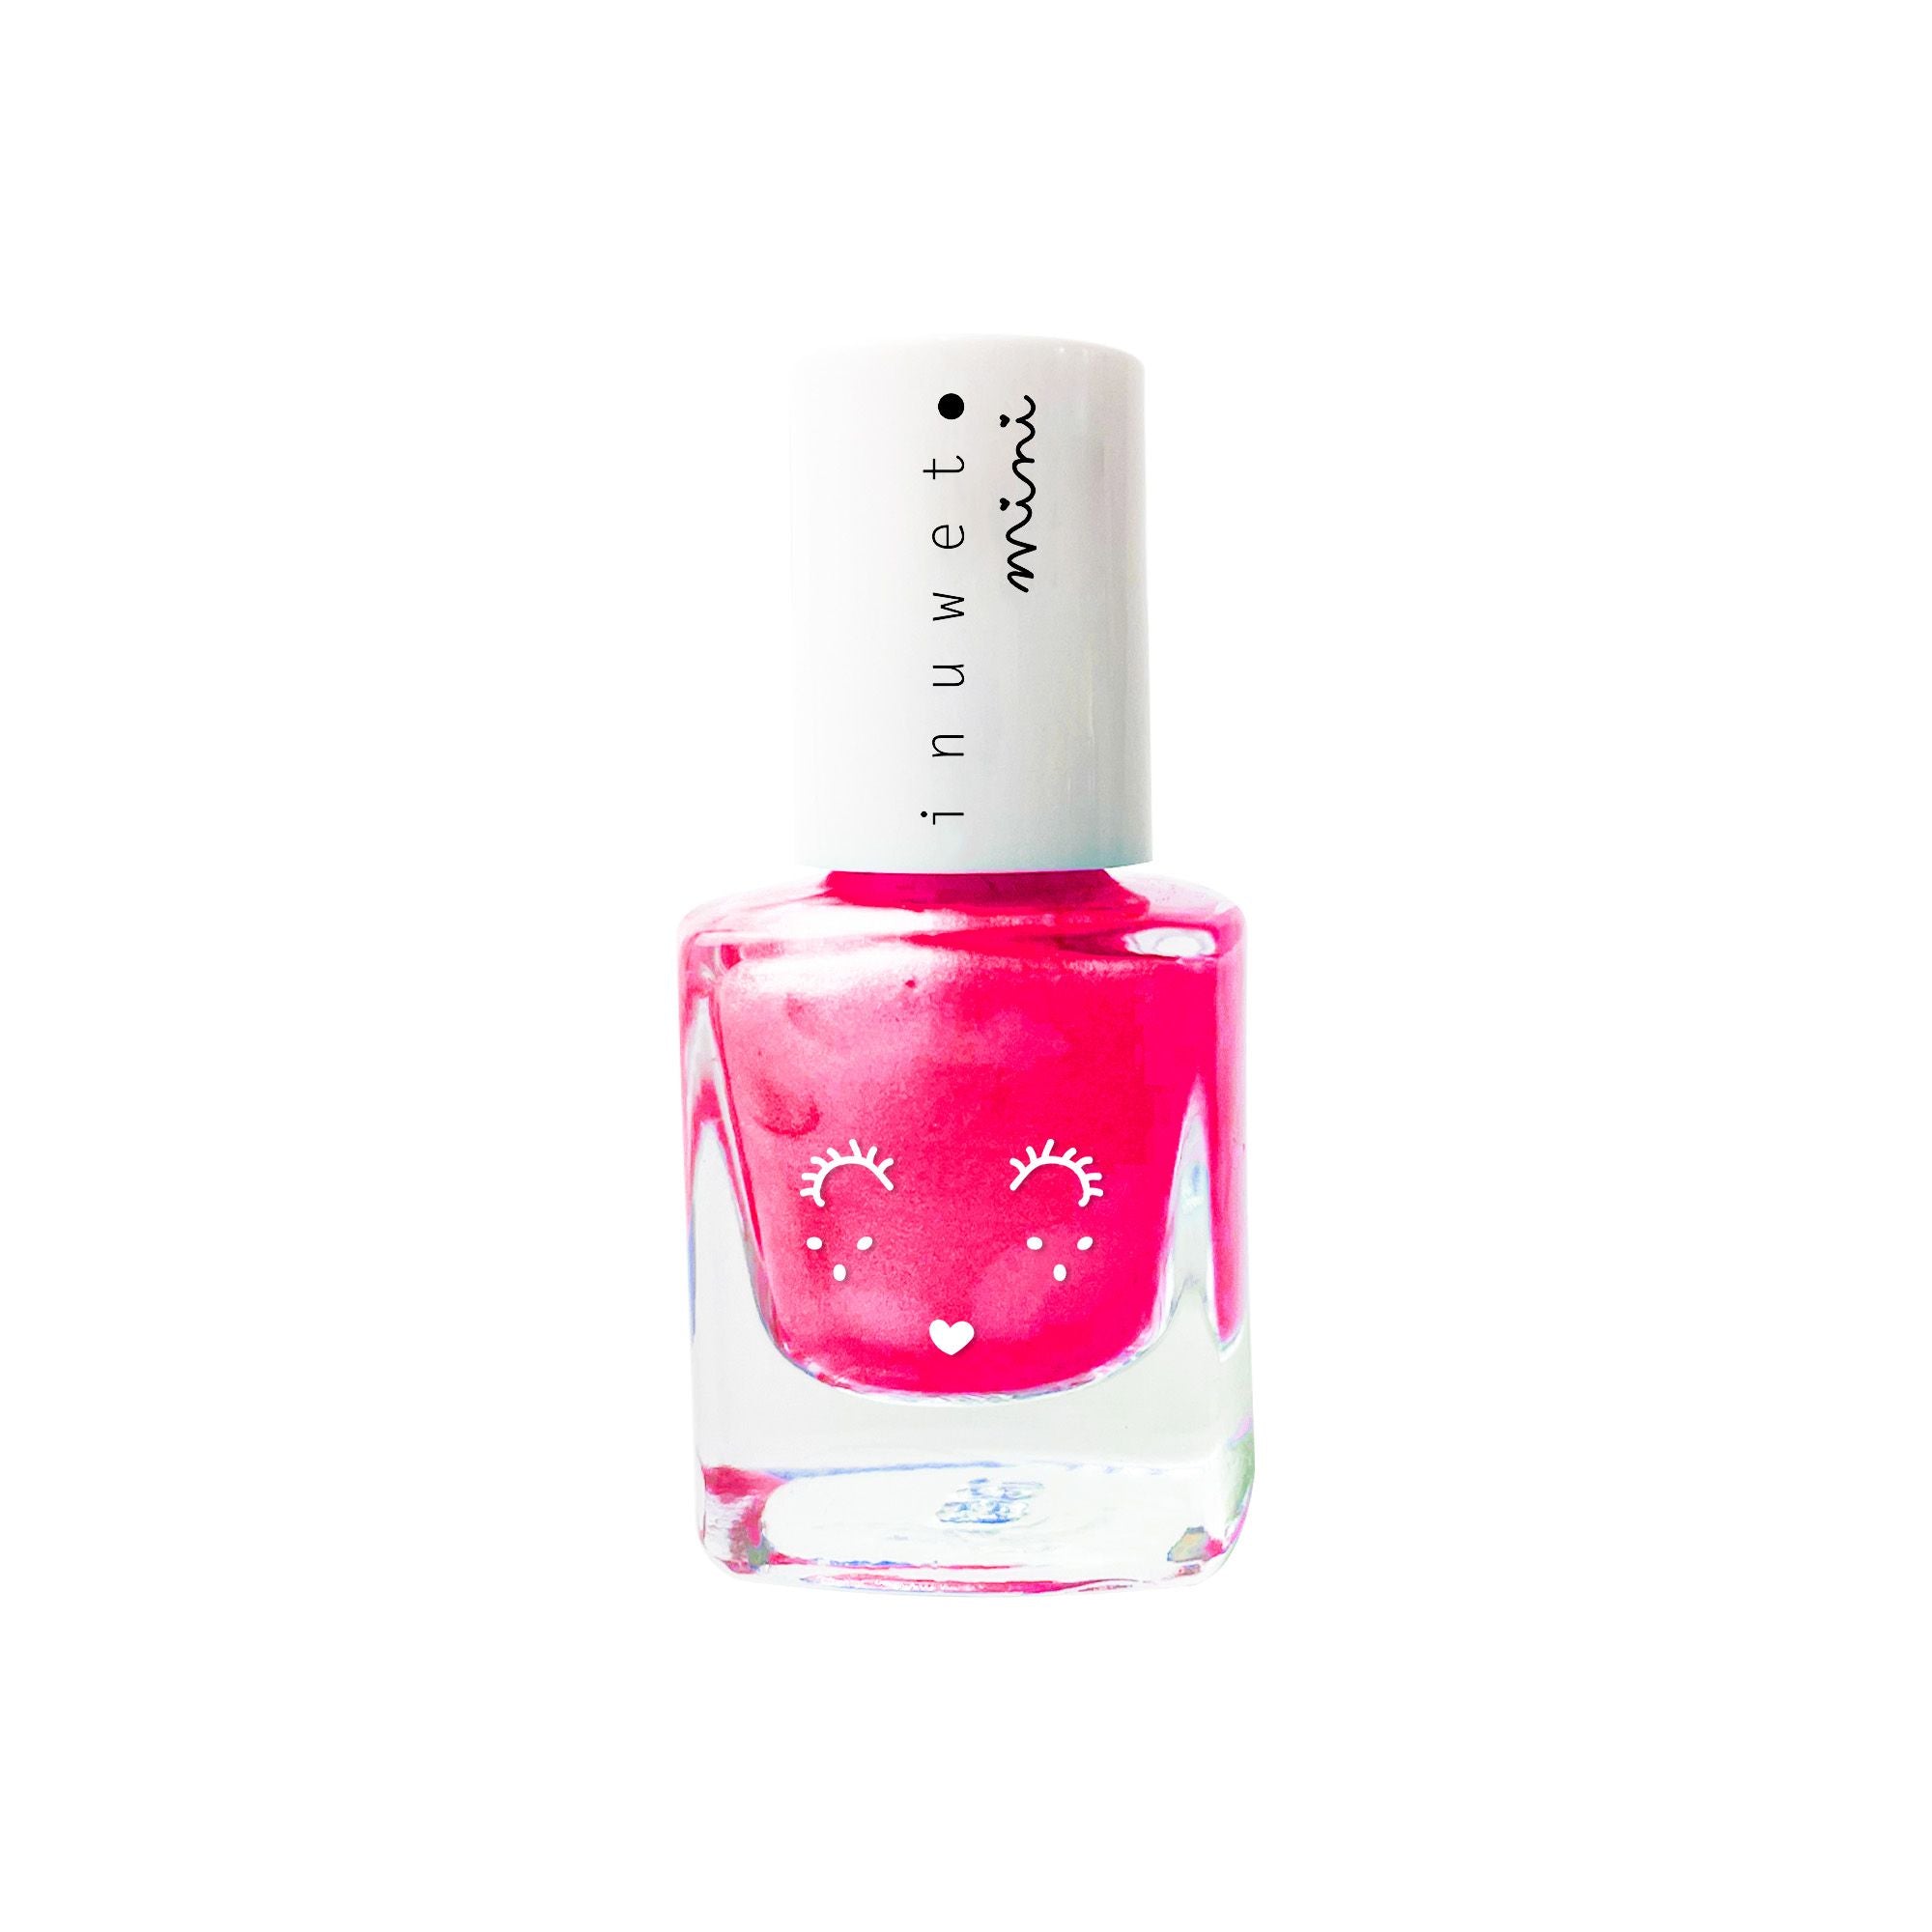 inuwet water based nail polish - fluoro pink bubblegum